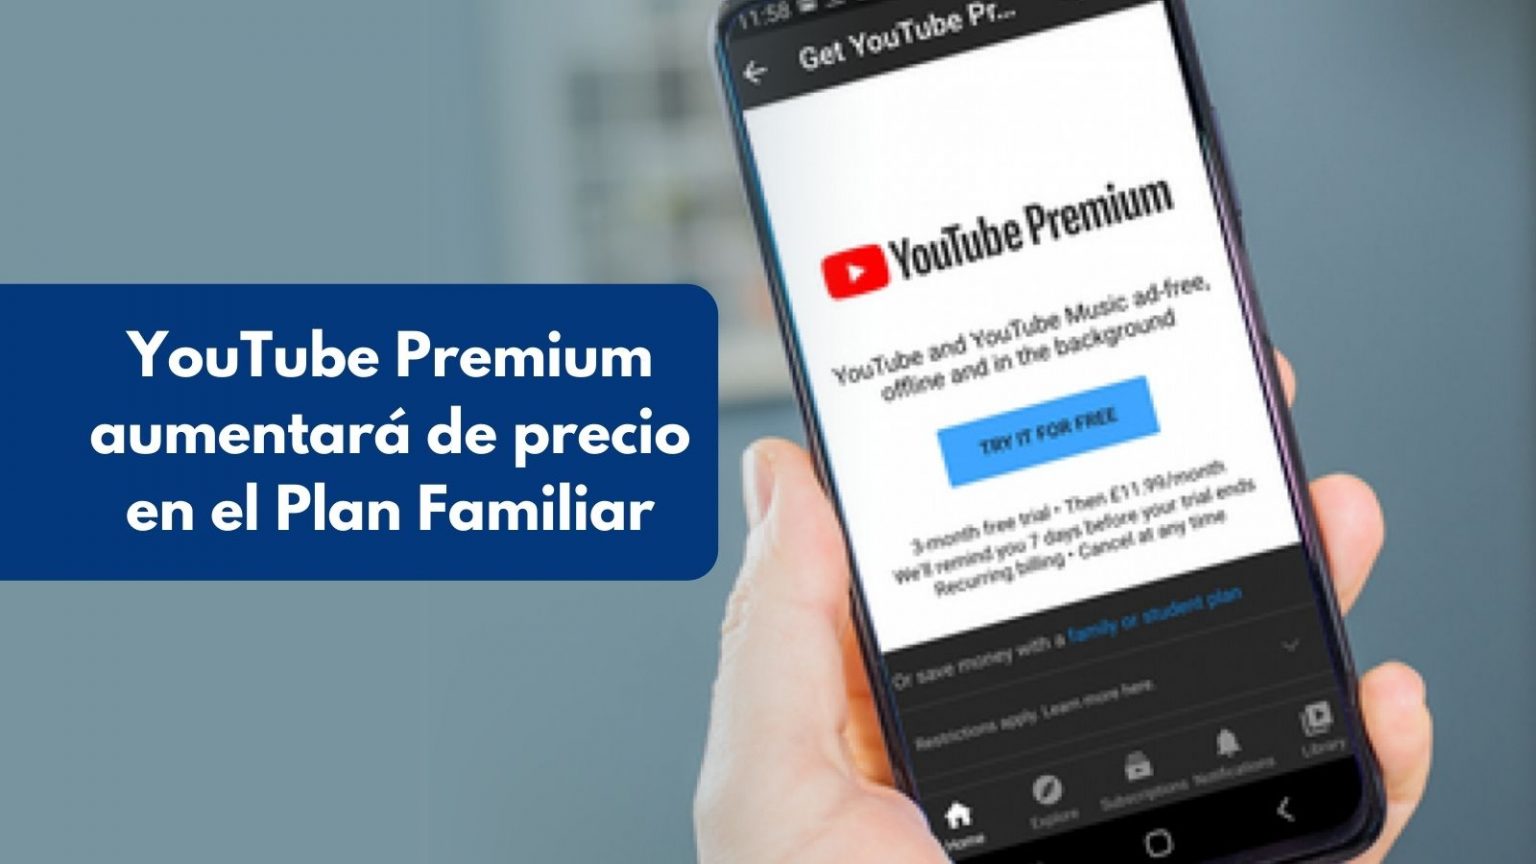 YouTube Premium subirá de precio el Plan Familiar a partir de marzo